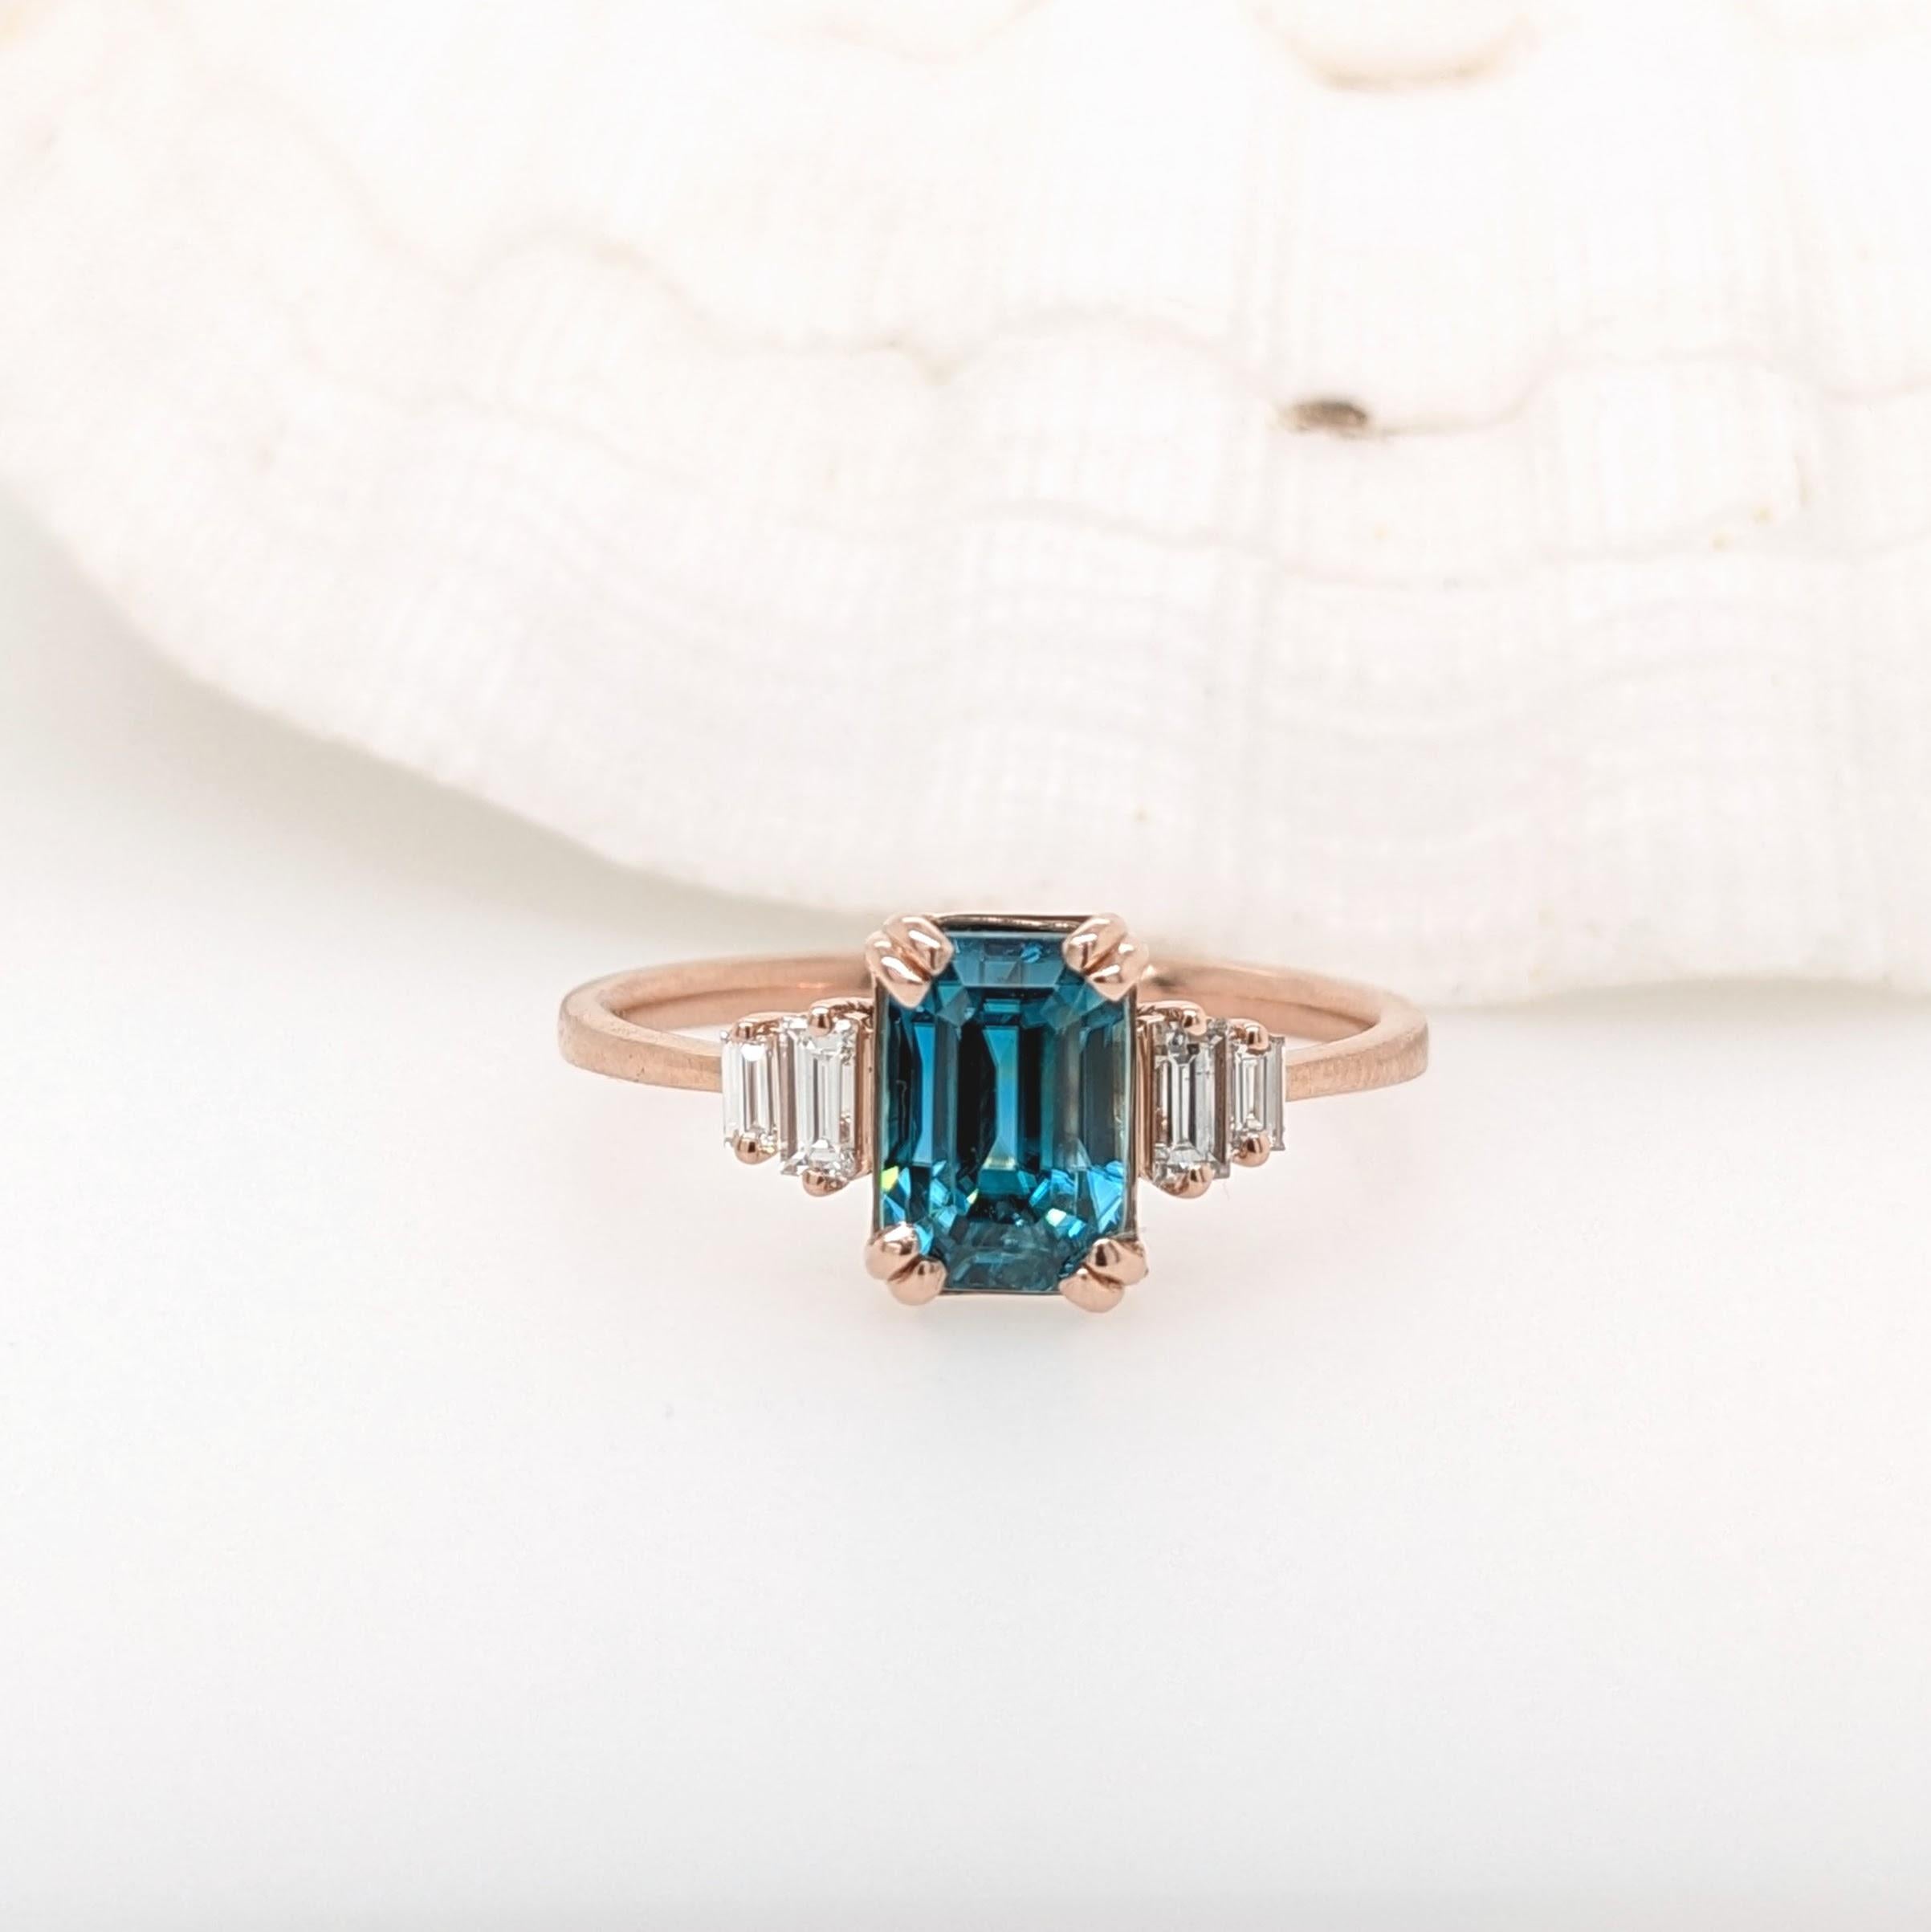 Dieser Statement-Ring zeigt einen wunderschönen, funkelnden, natürlichen blauen Zirkon in massivem 14-karätigem Roségold mit schönen Baguette-Diamant-Akzenten, die ihm ein elegantes, modernes Aussehen verleihen. Zirkone sind für ihren Brechungsindex